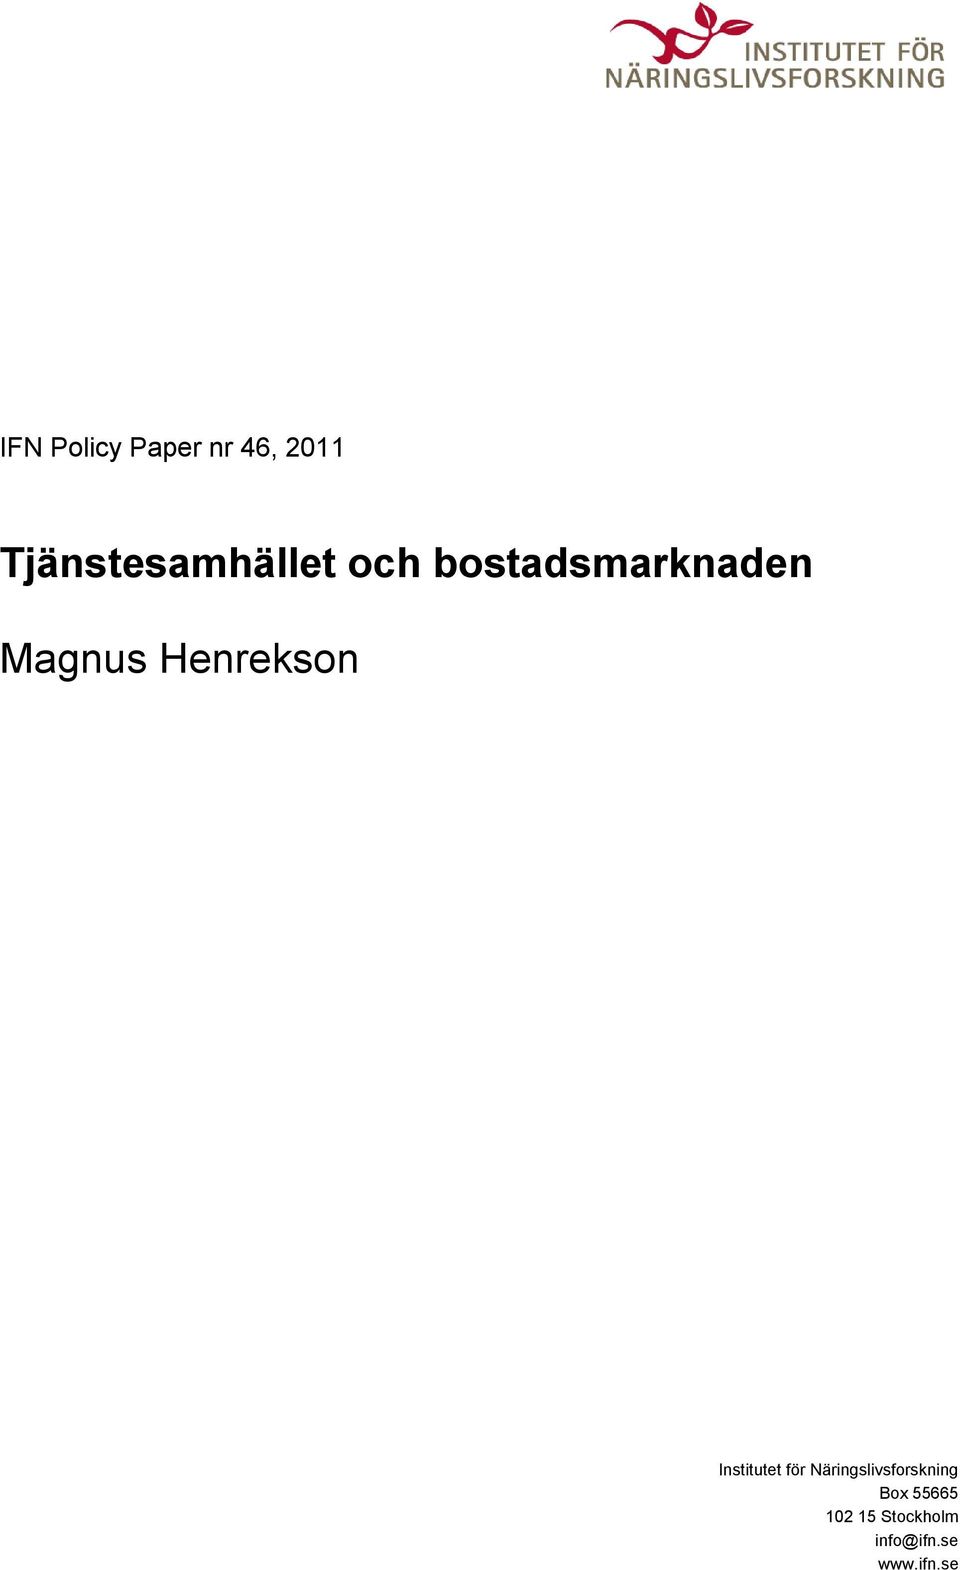 Magnus Henrekson Institutet för